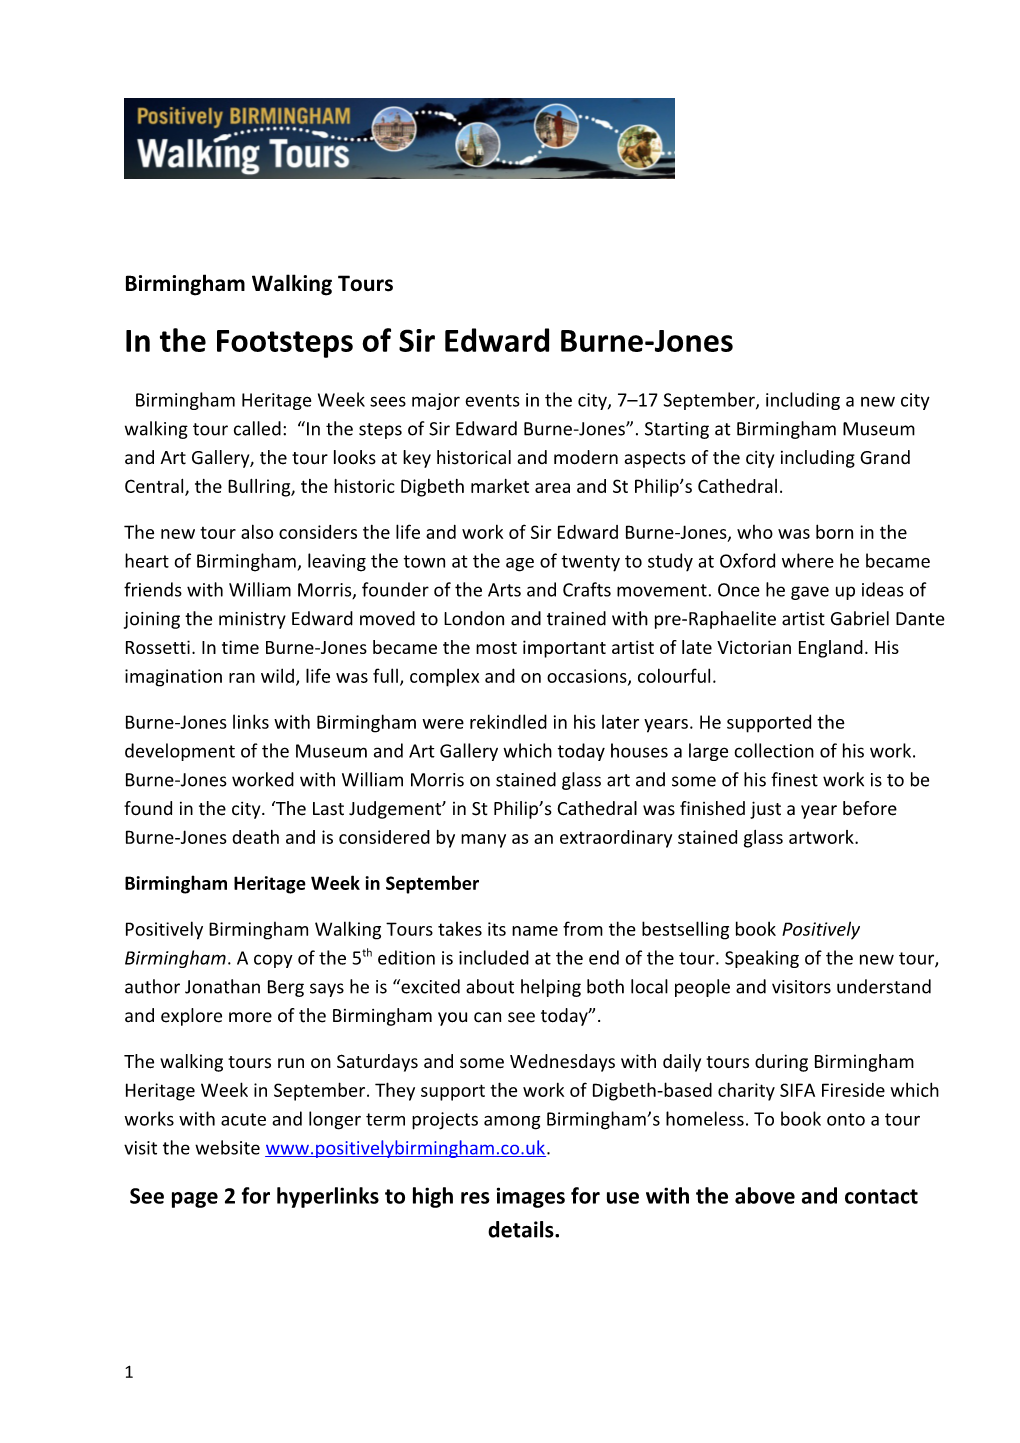 In the Footsteps of Sir Edward Burne-Jones